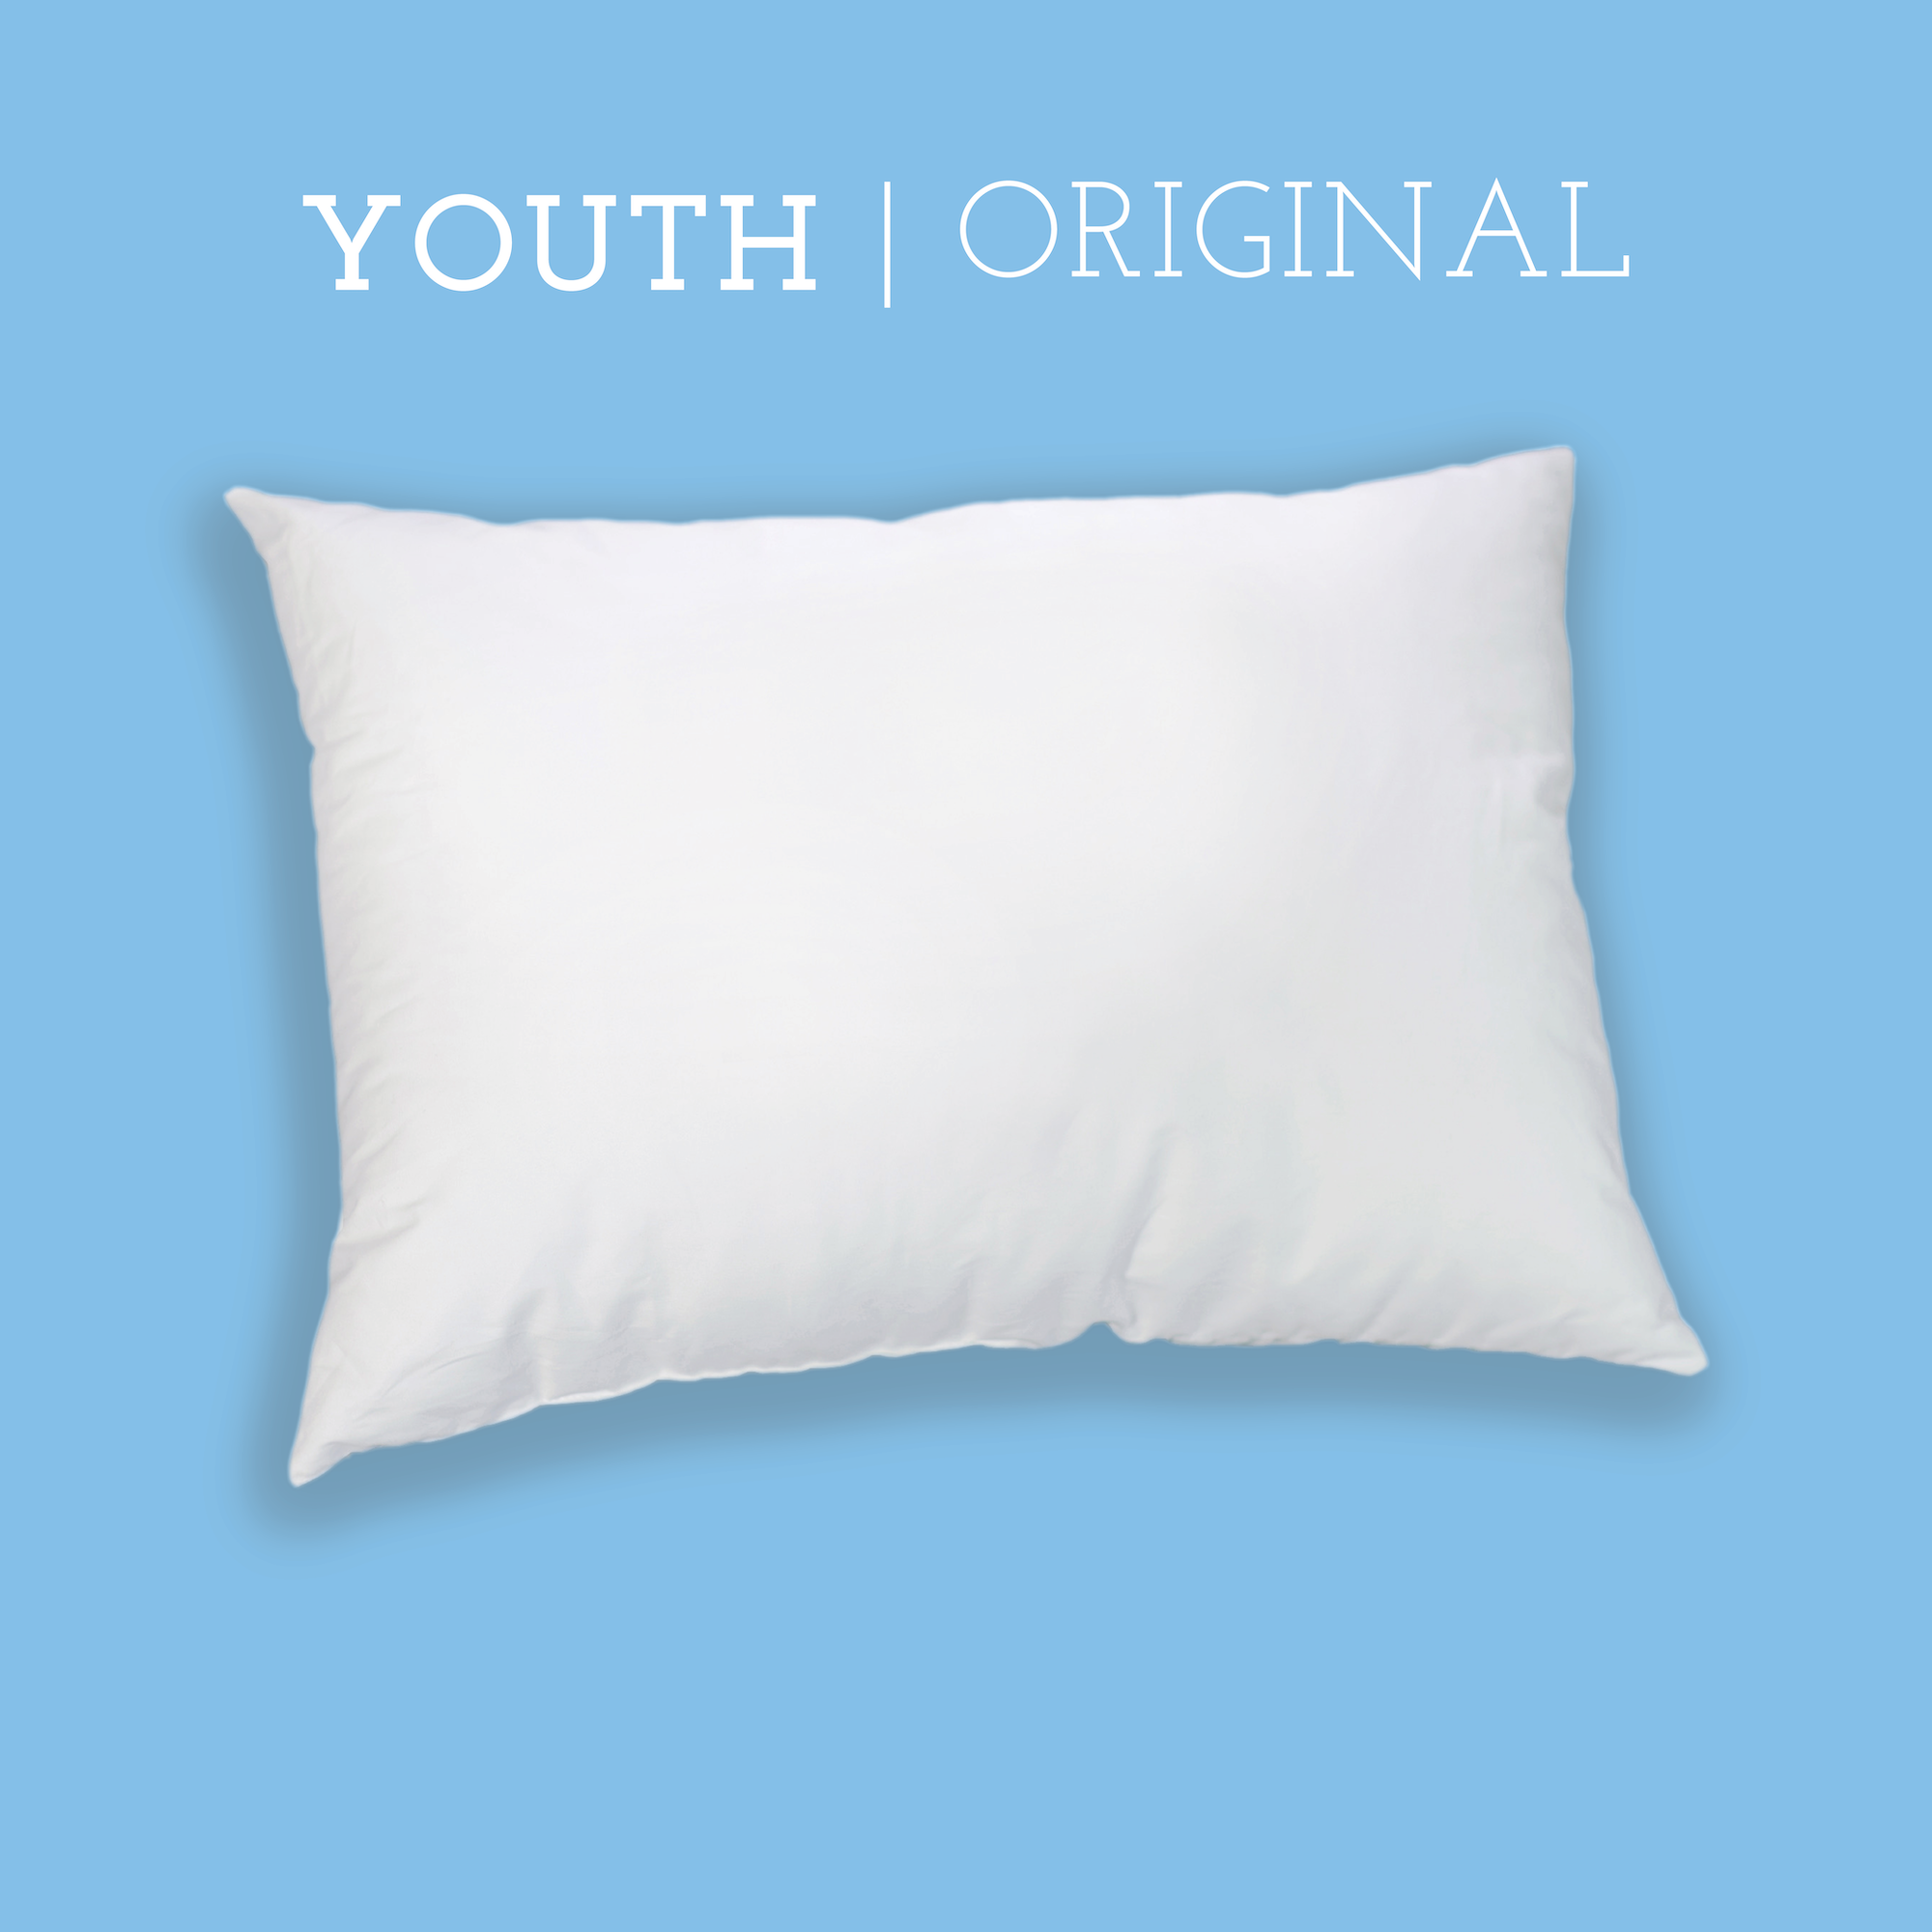 Original Youth Pillow (16" X 22")